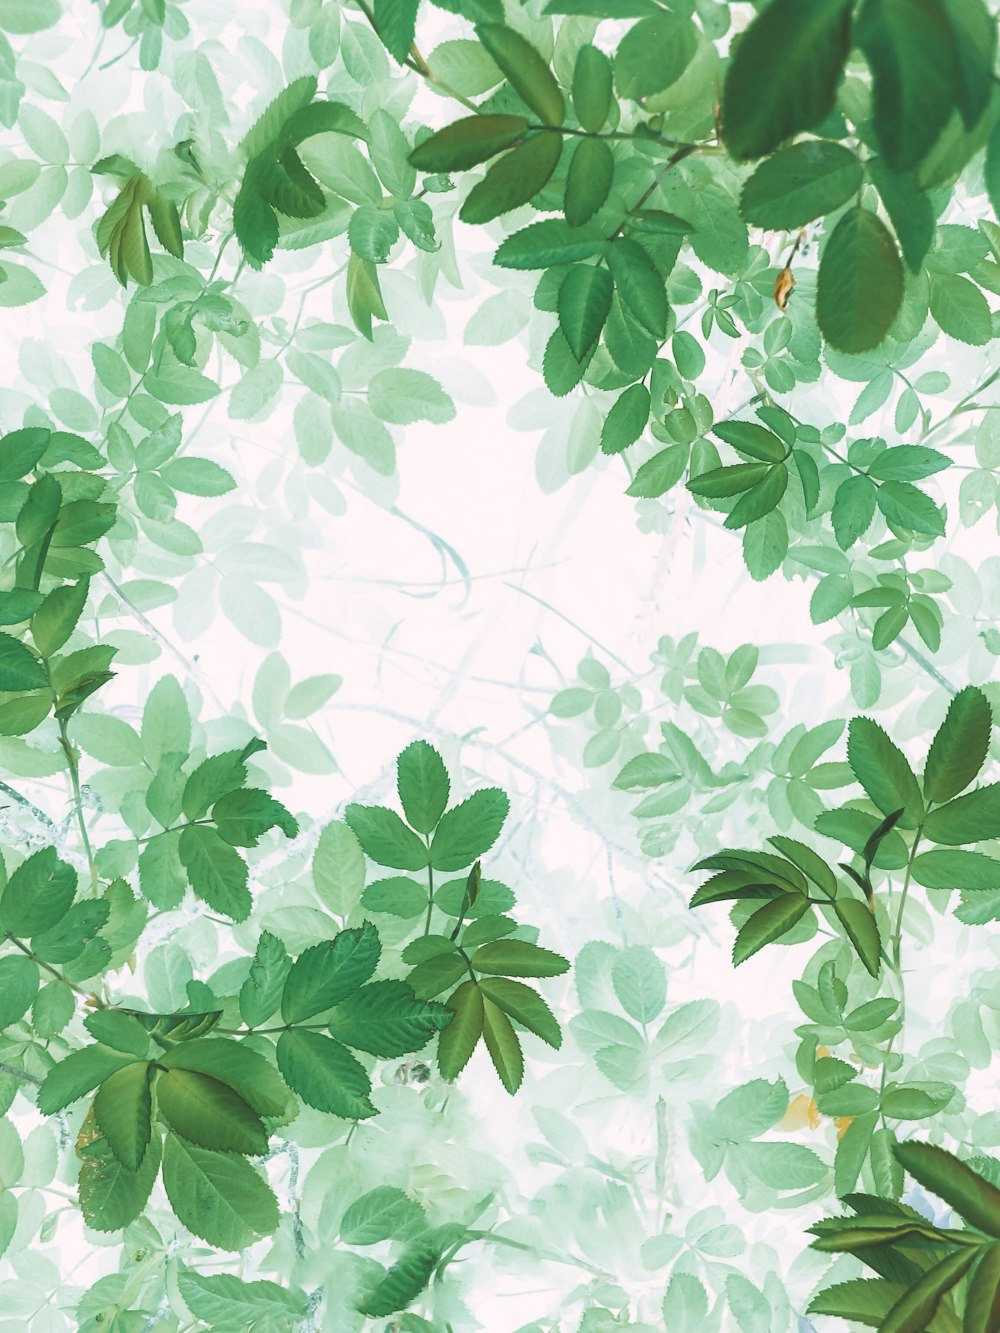 green leaves on white background photo – Free Image on Unsplash